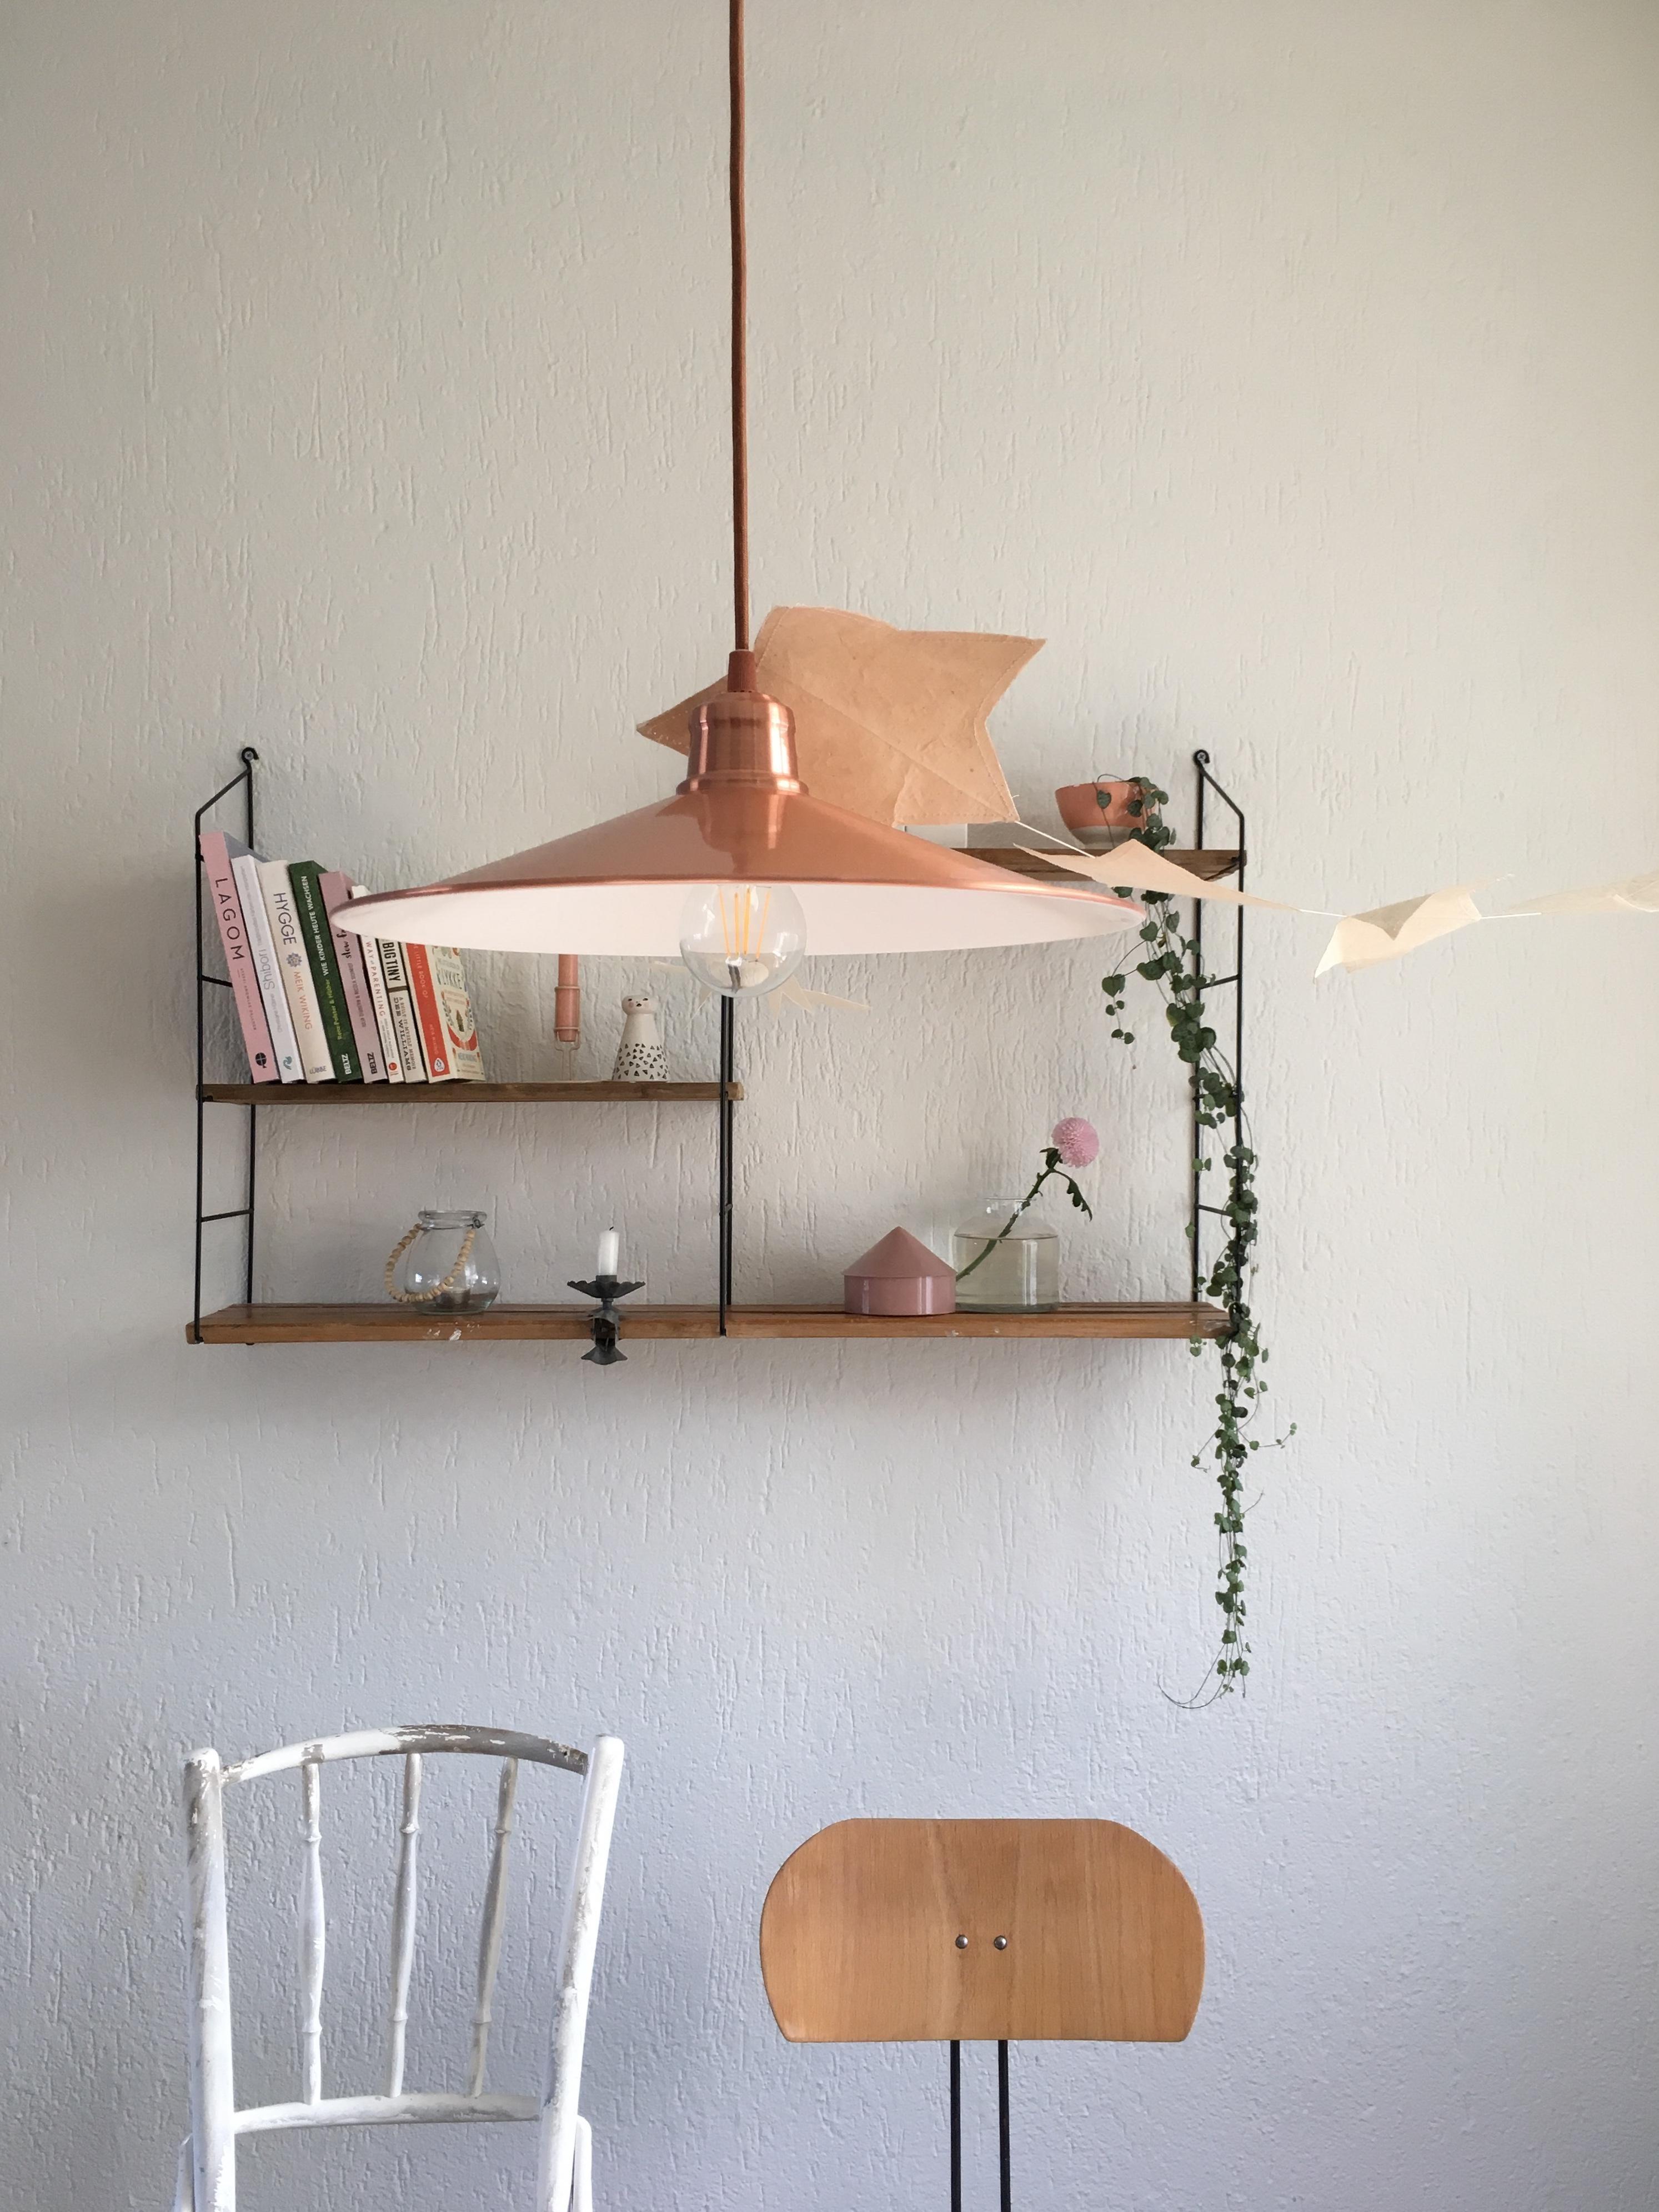 #DIYweek #lieblingsDIY #stringshelf #DIYstringshelf #shelfie #homestory #scandinavianhome #minimalismus #hygge #interior